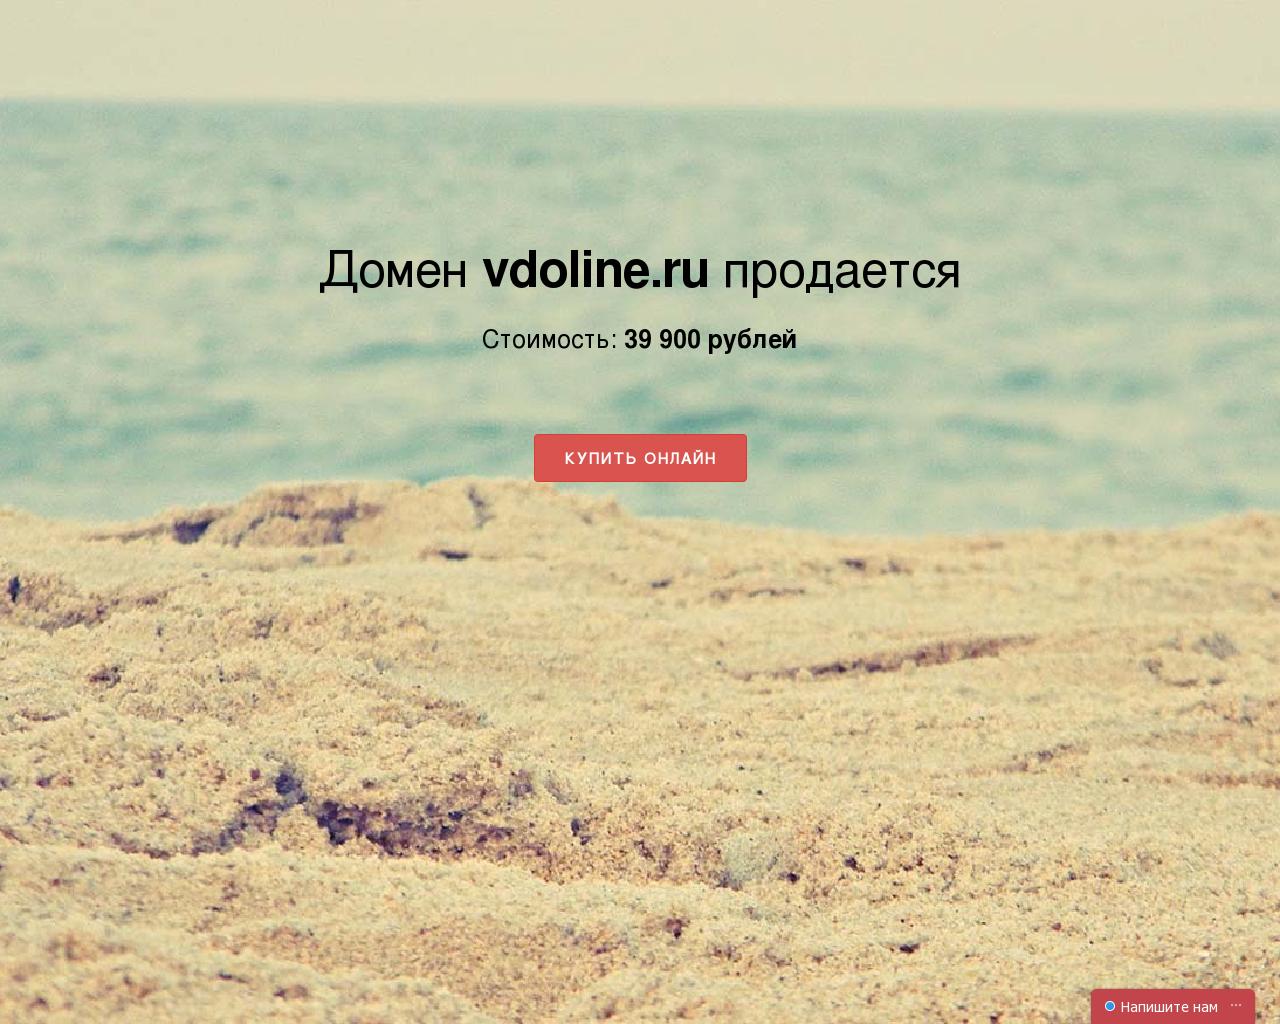 Изображение сайта vdoline.ru в разрешении 1280x1024